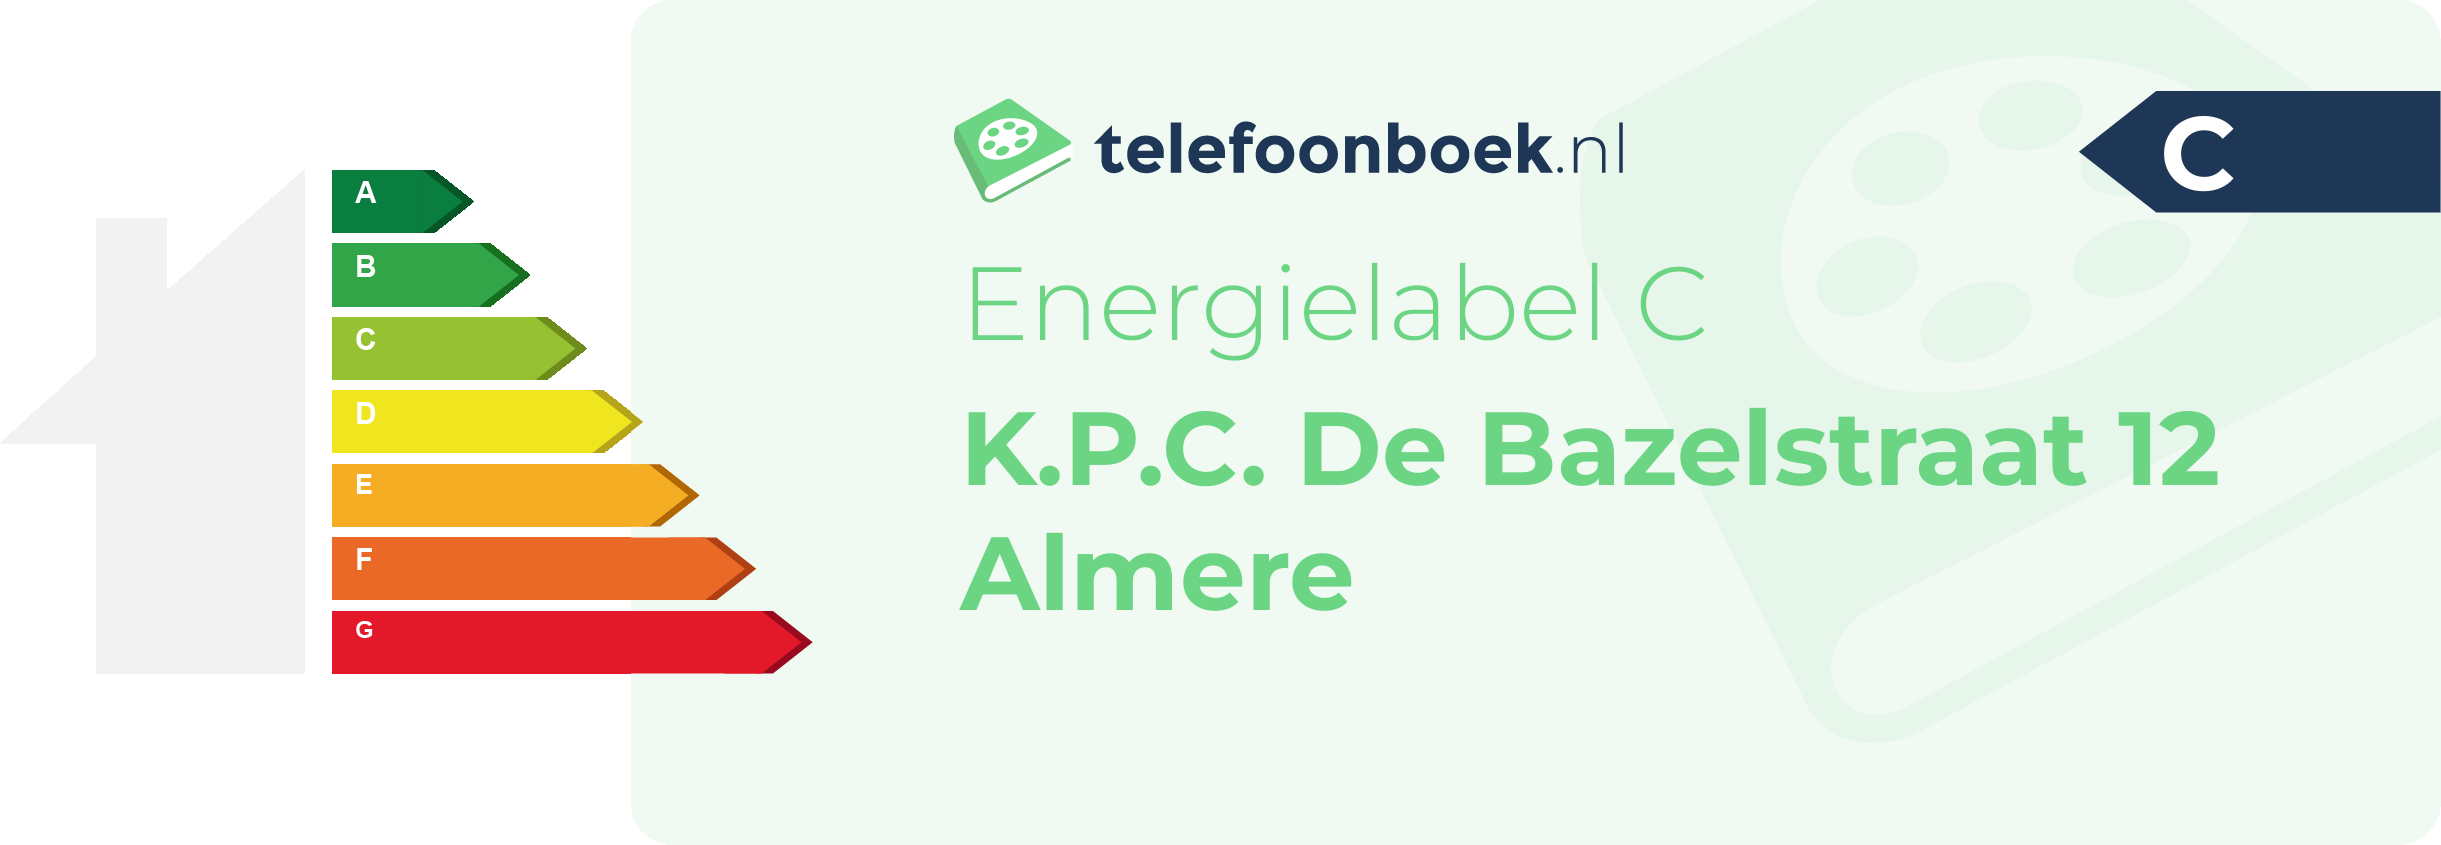 Energielabel K.P.C. De Bazelstraat 12 Almere